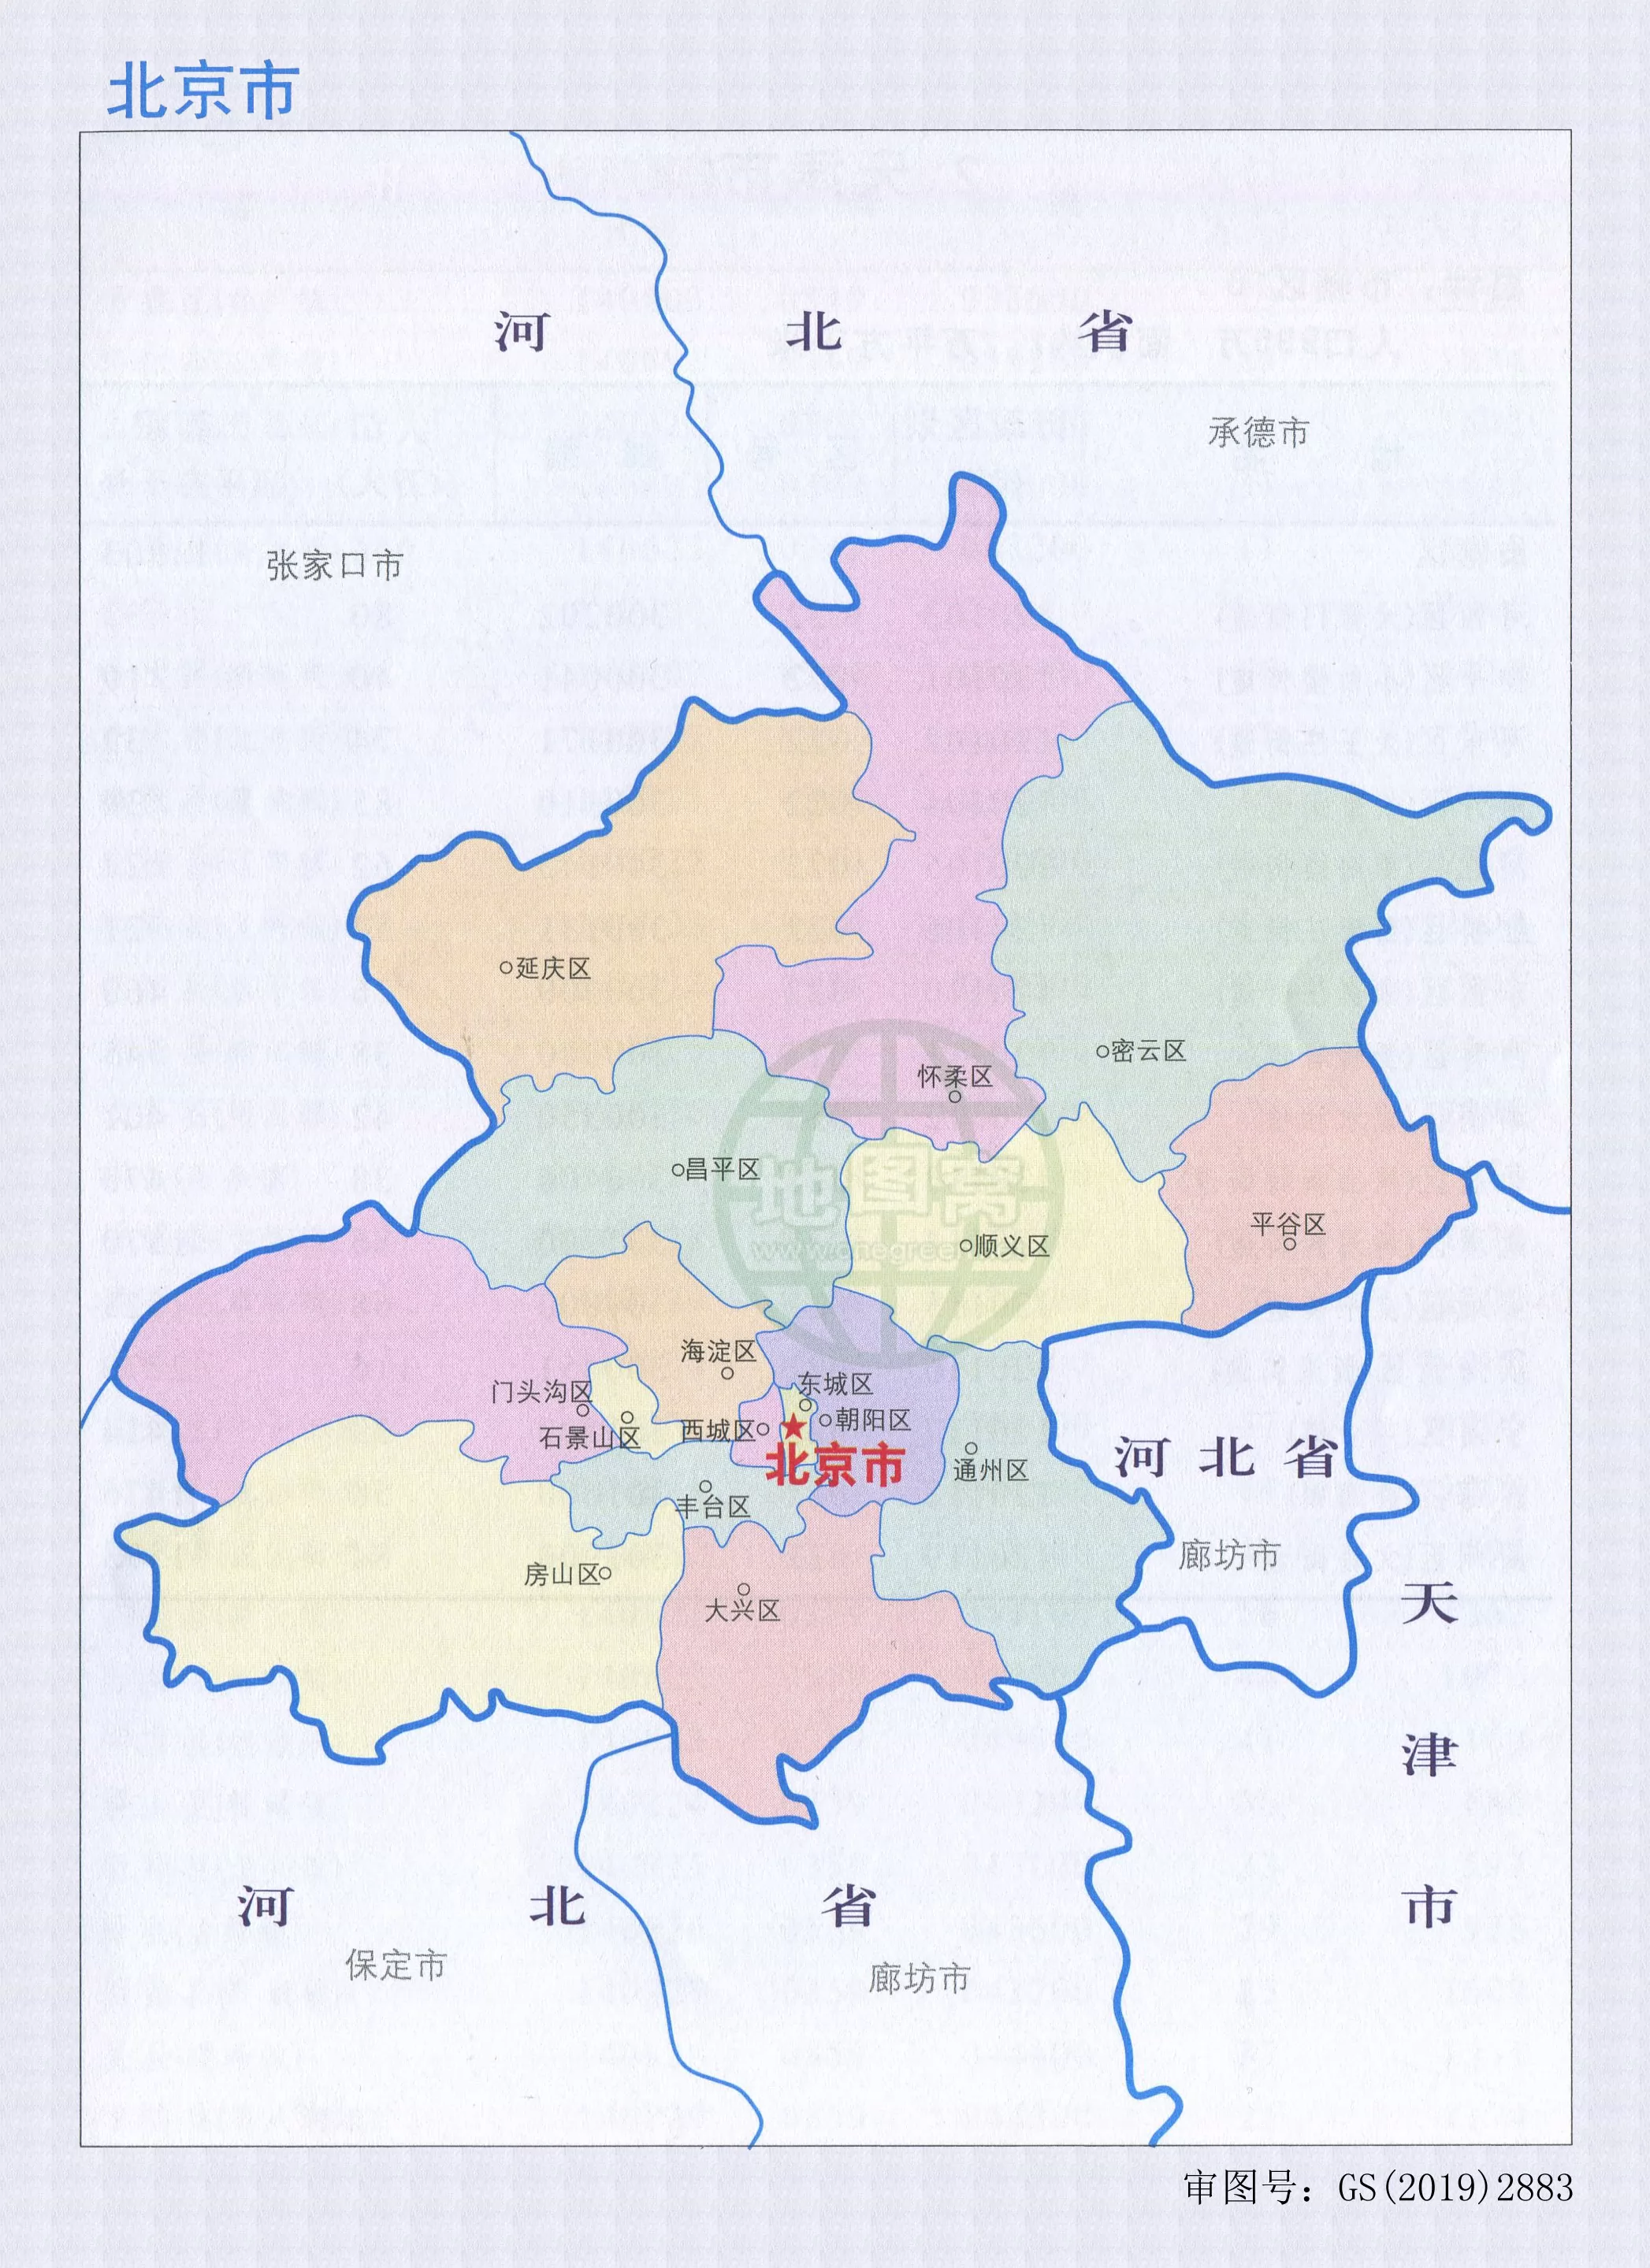 北京市行政区划图 行政统计表 北京市地图 地理教师网